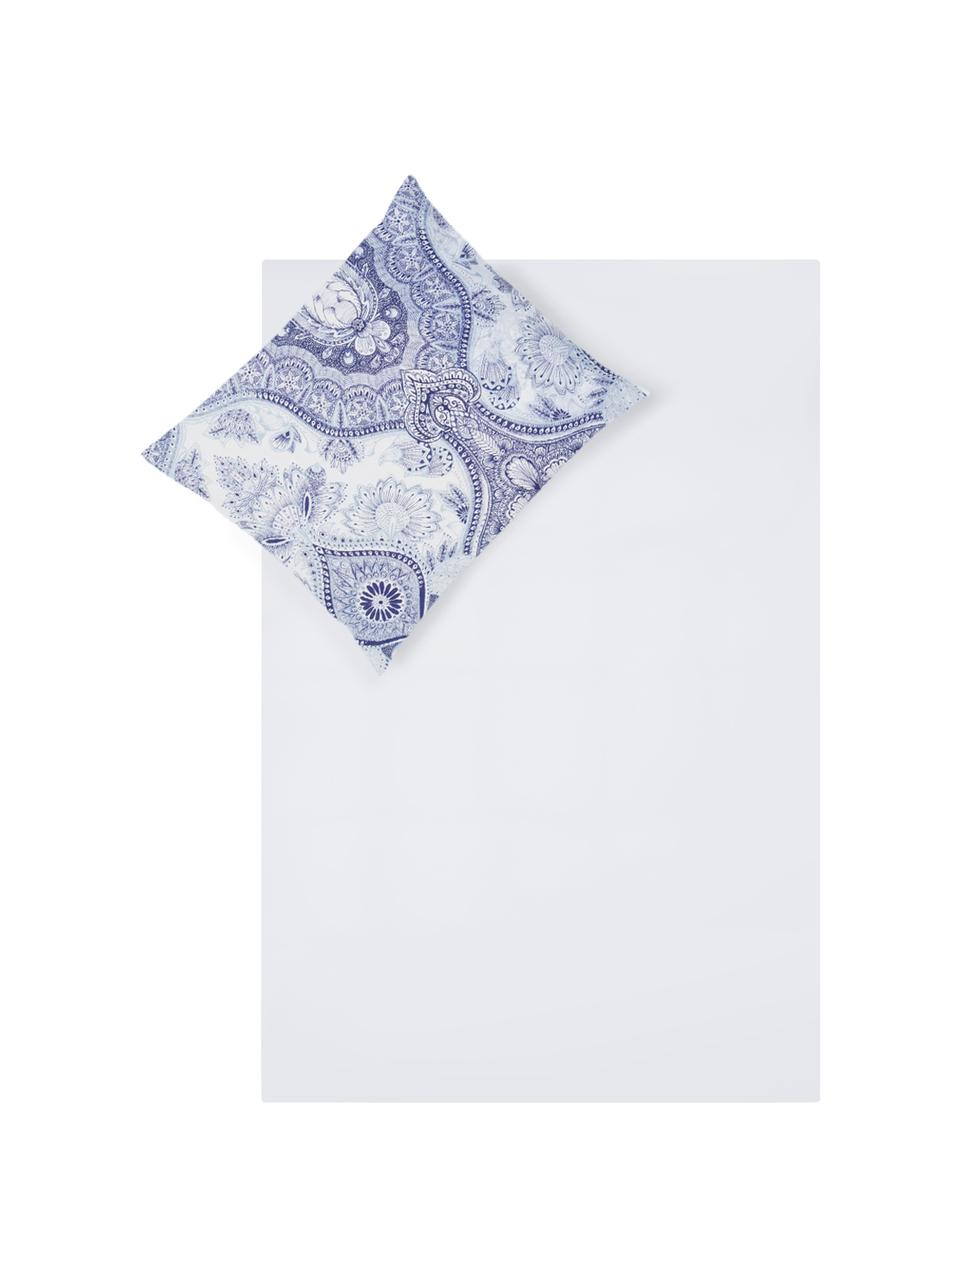 Dubbelzijdig dekbedovertrek Lato, Katoen, Bovenzijde: blauwtinten, wit. Onderzijde: wit, 140 x 200 cm